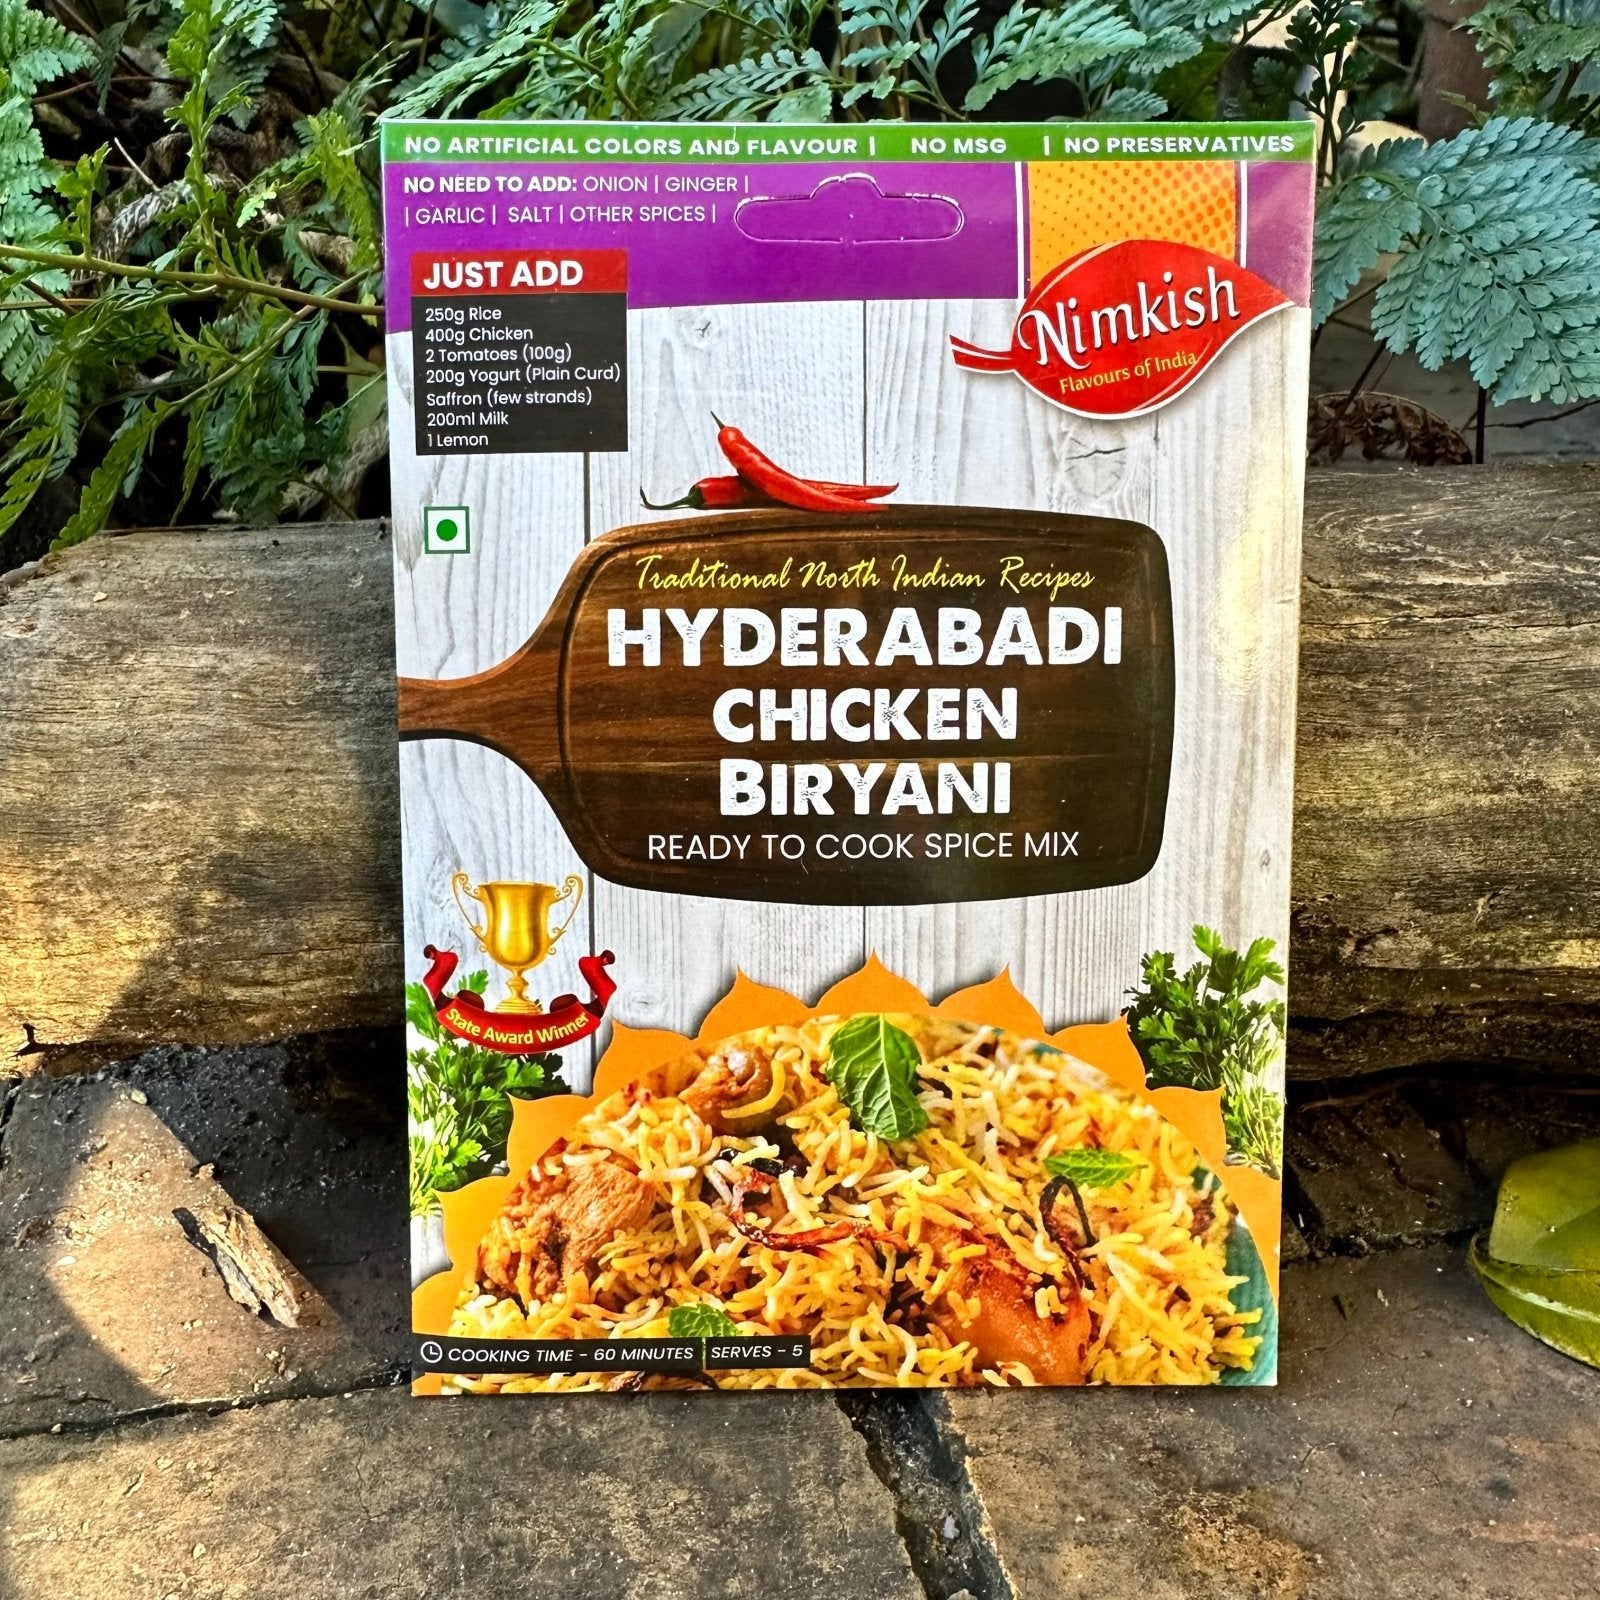 Nimkish Hyderabadi Chicken Biryani Spice Mix (40g) - The Deli